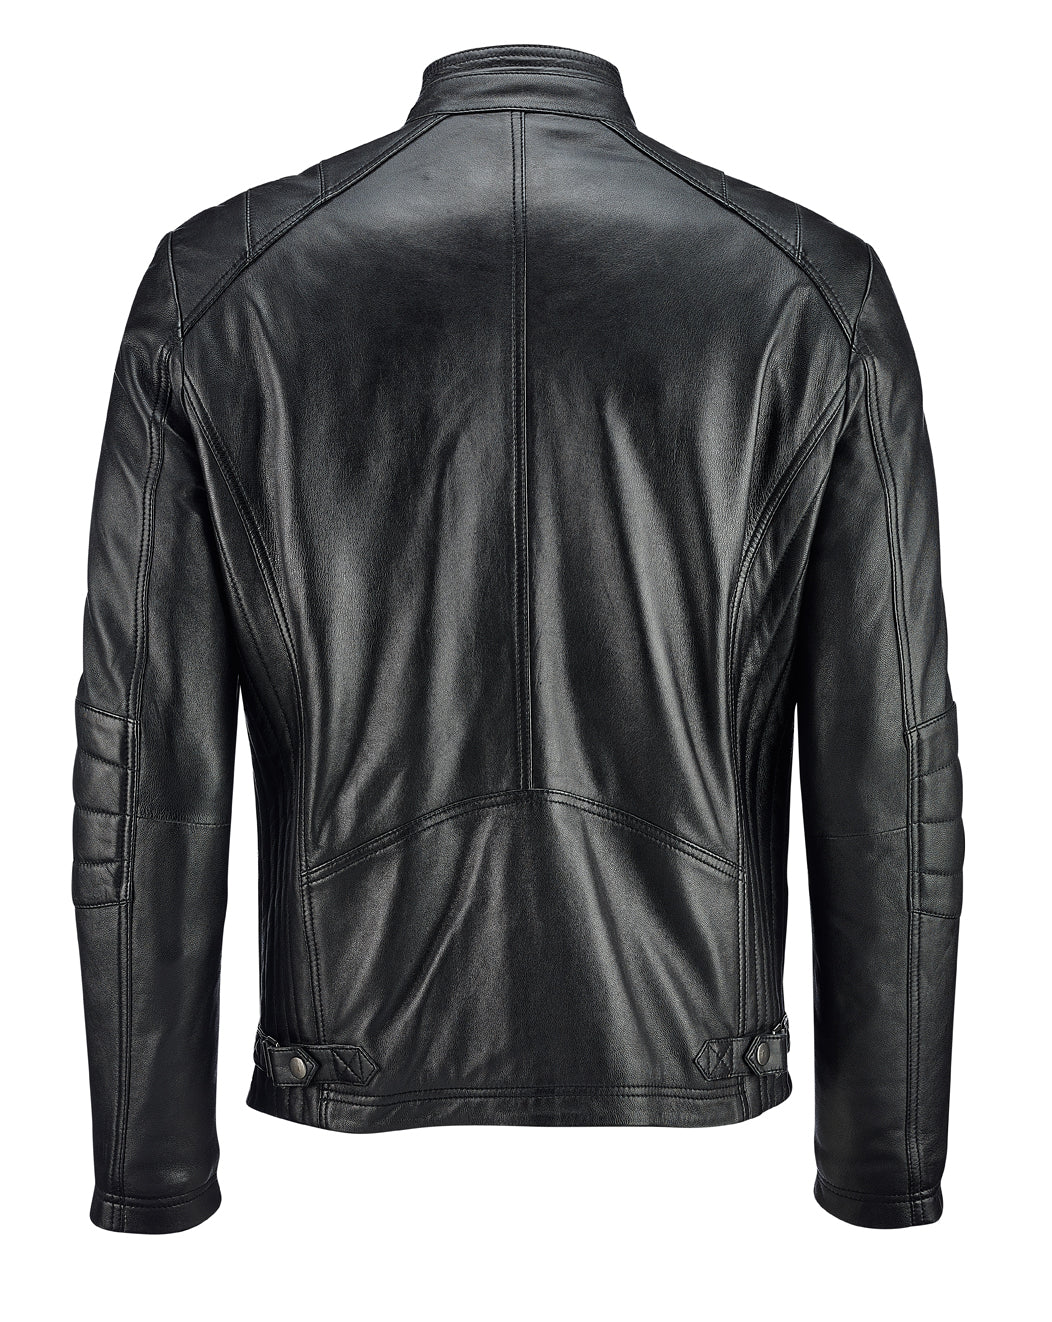 Veteran Leather Jacket - Black - The Long Voyage#N# #N# #N# – TheLongVoyage